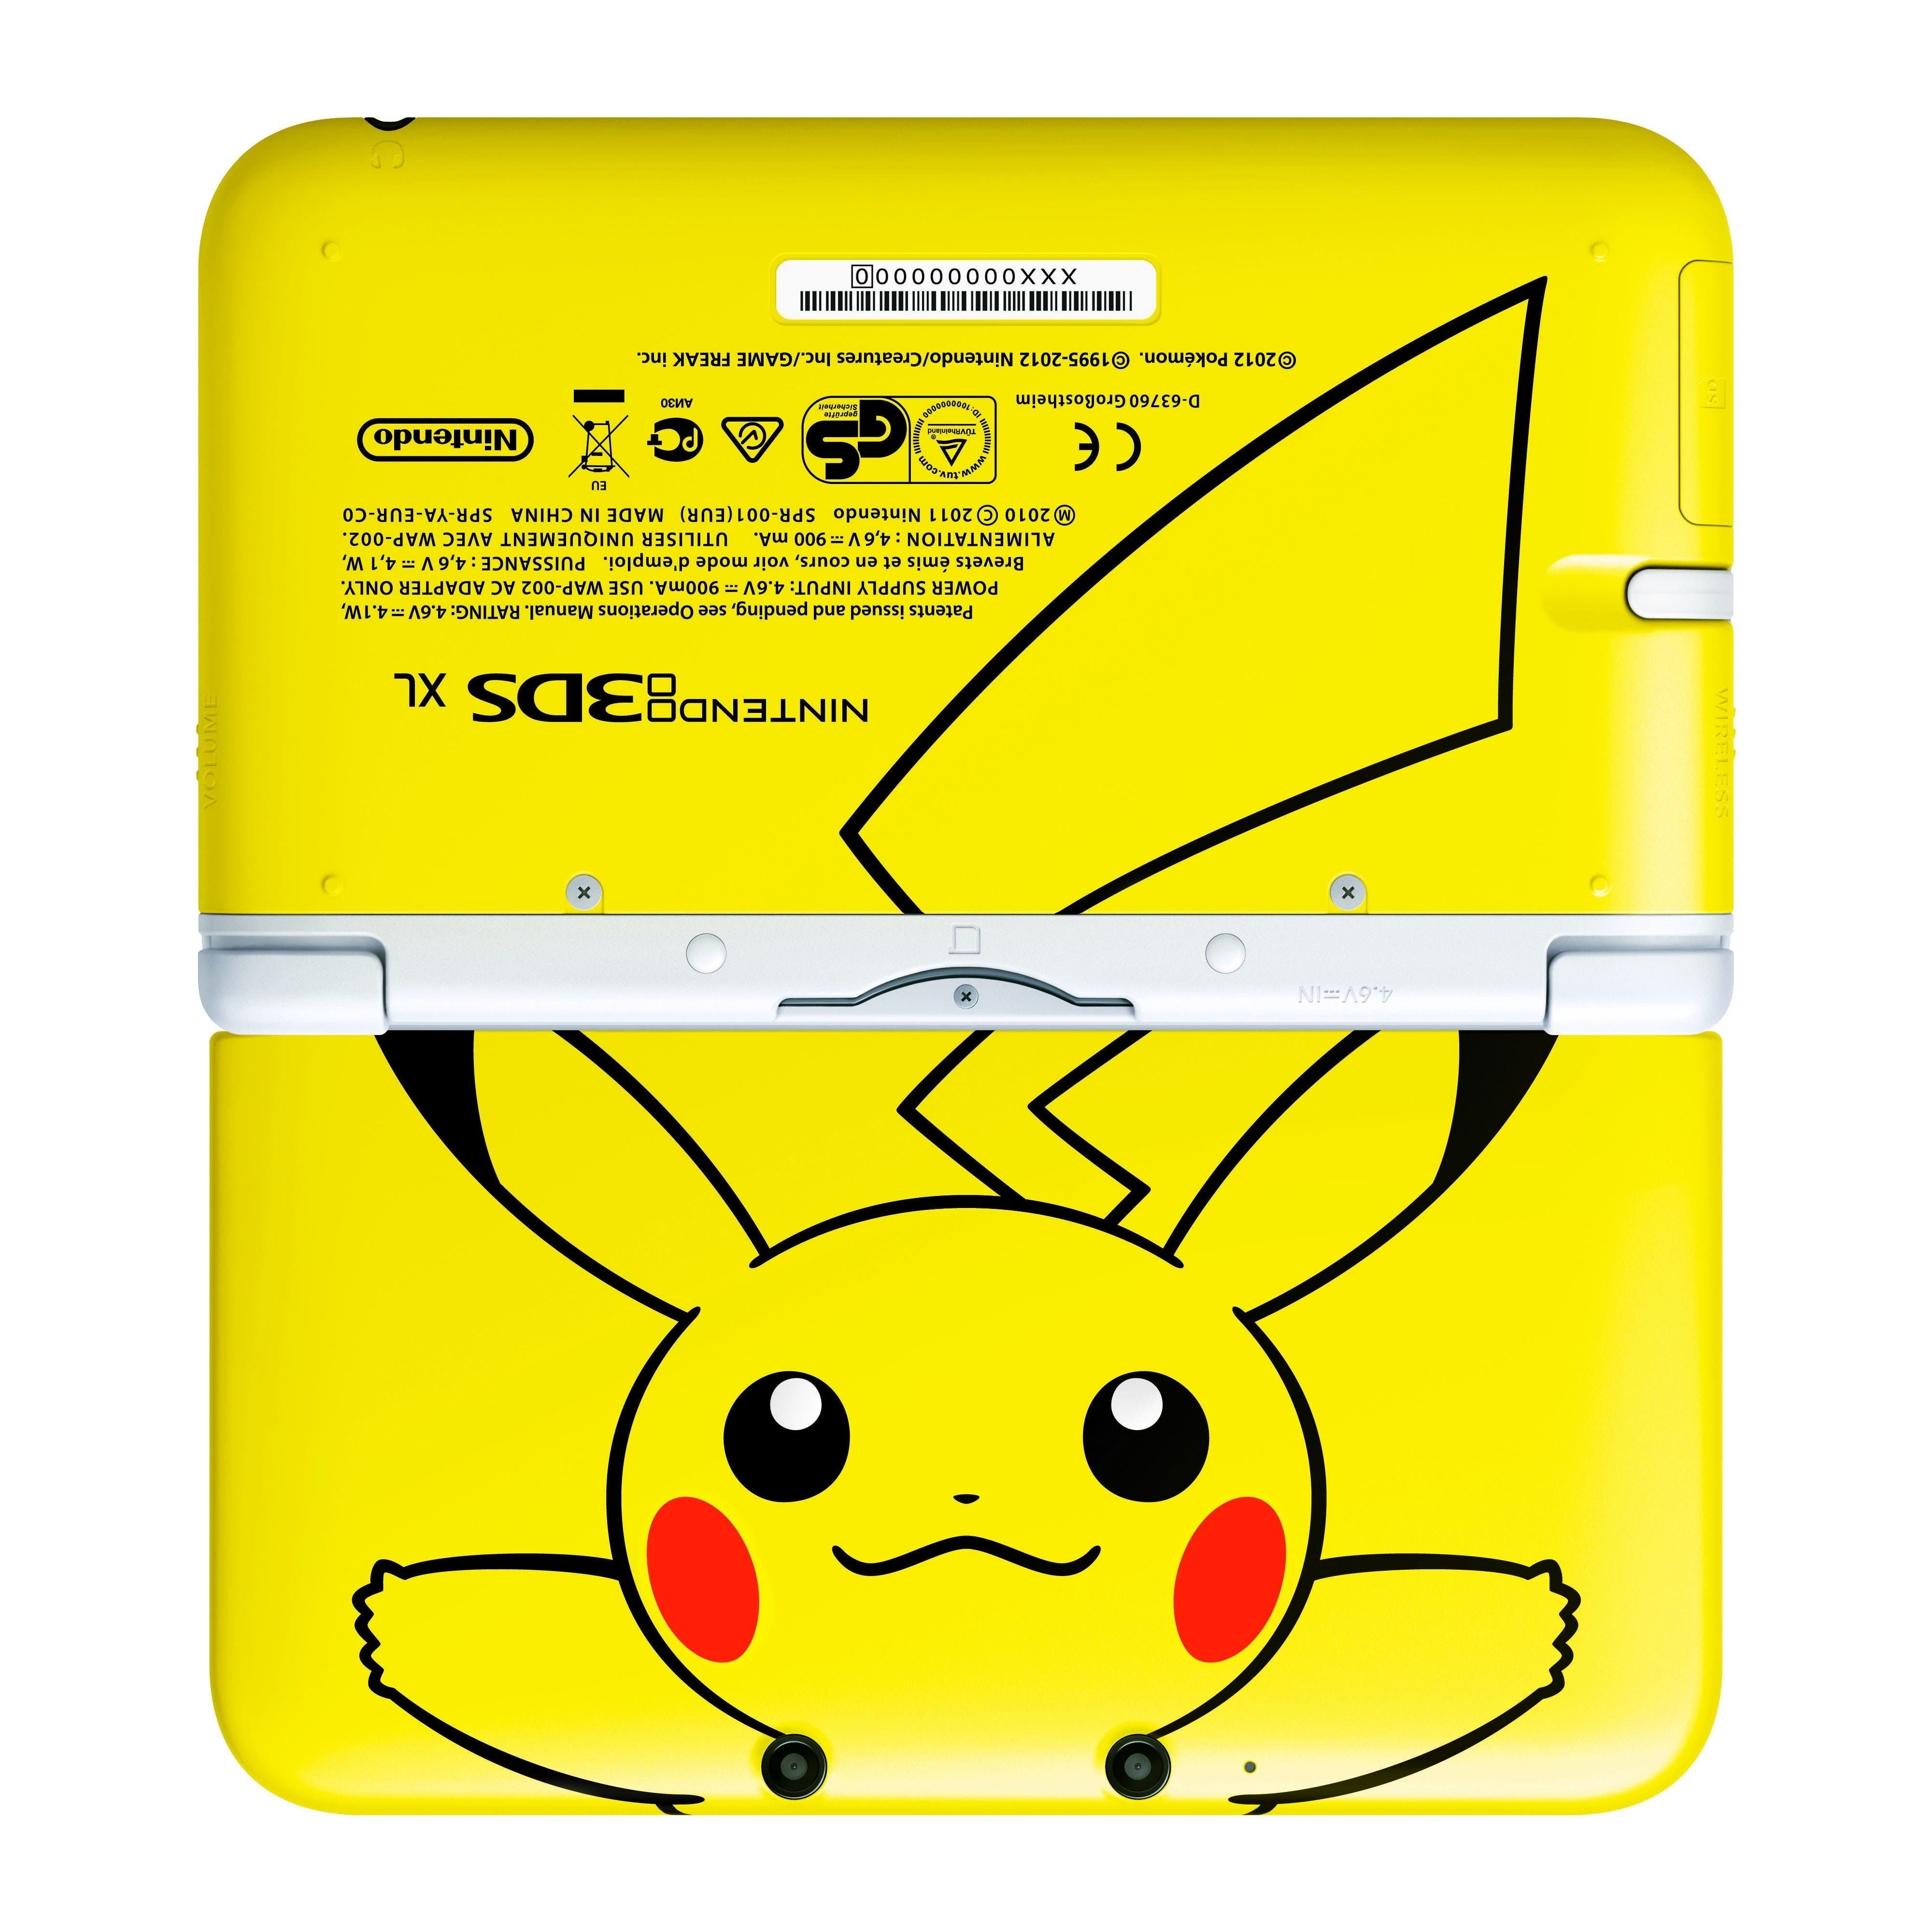 Nuevos packs de Nintendo 3DS XL por Navidad, incluida la Edición Especial Pikachu